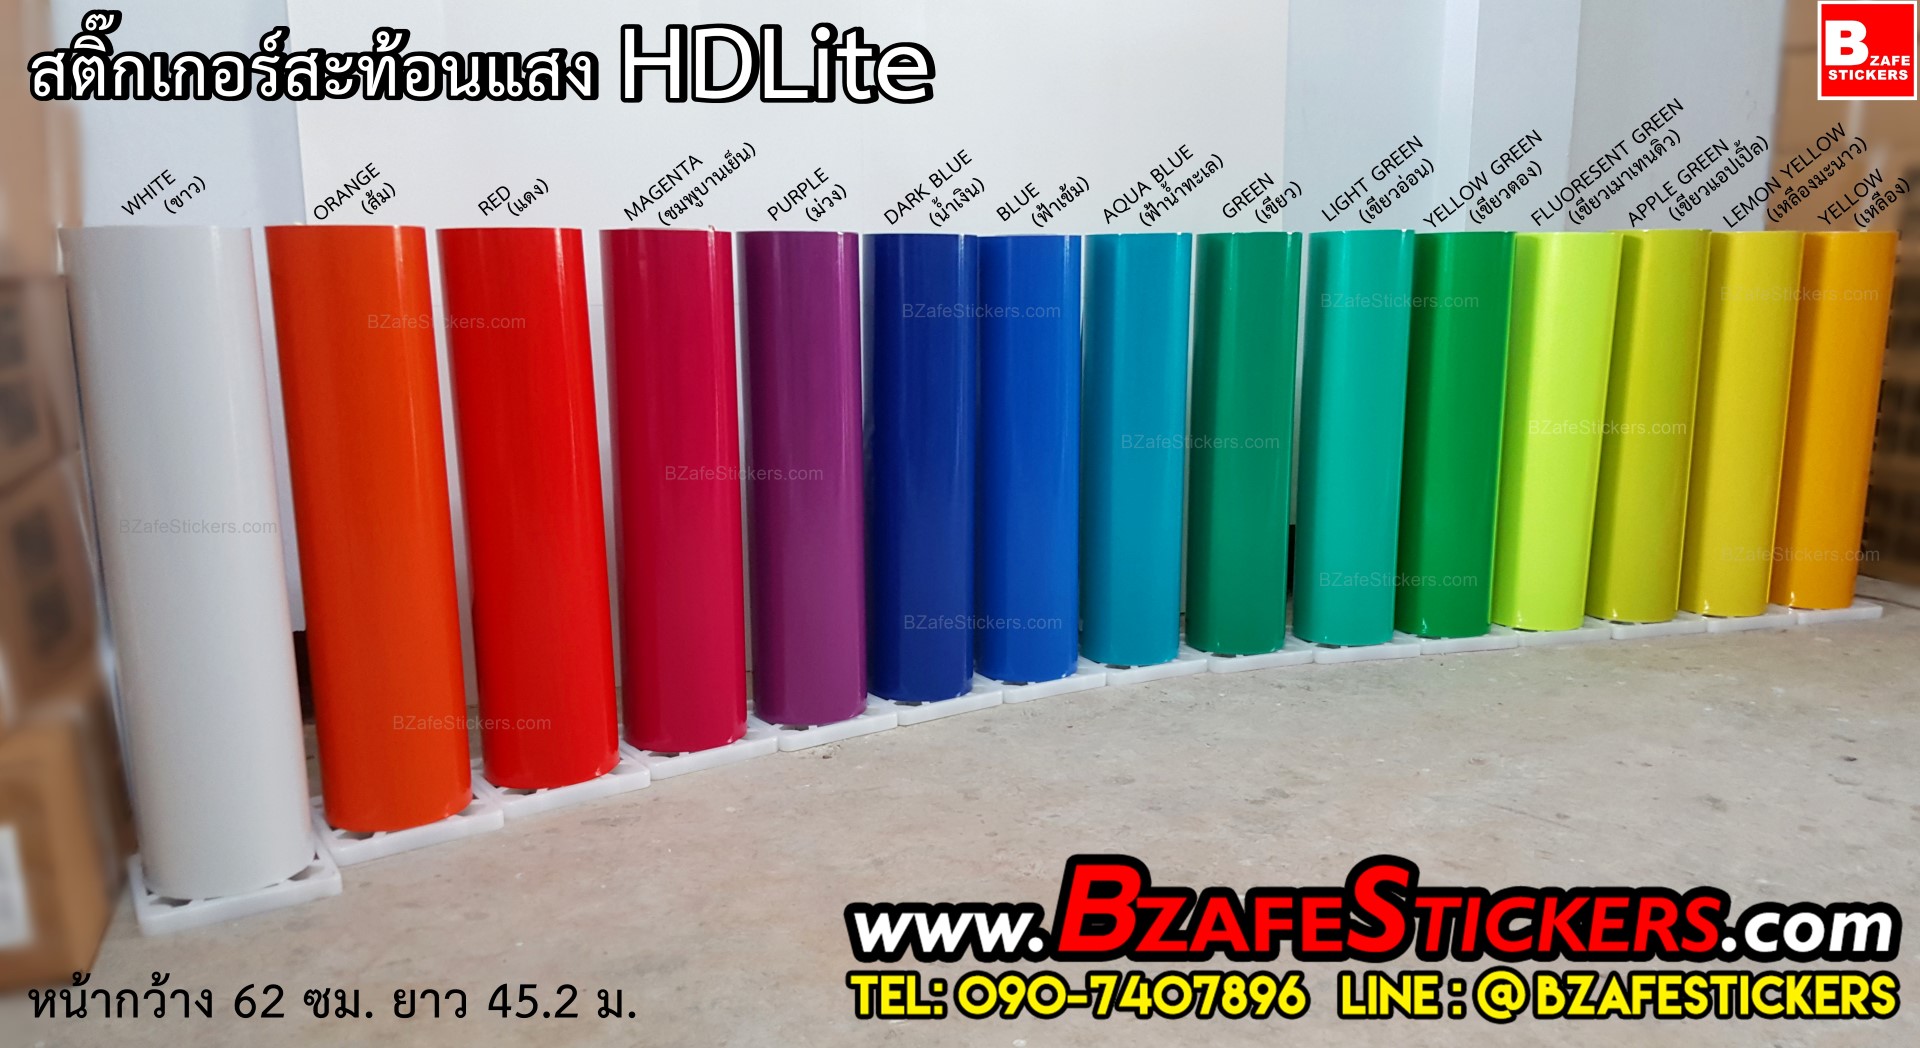 จำหน่ายสติ๊กเกอร์สะท้อนแสง HDLite สติ๊กเกอร์สะท้อนแสงเทพ สีสวย ค่าสะท้อนดี แบบม้วน-ตัดเมตร รูปที่ 1